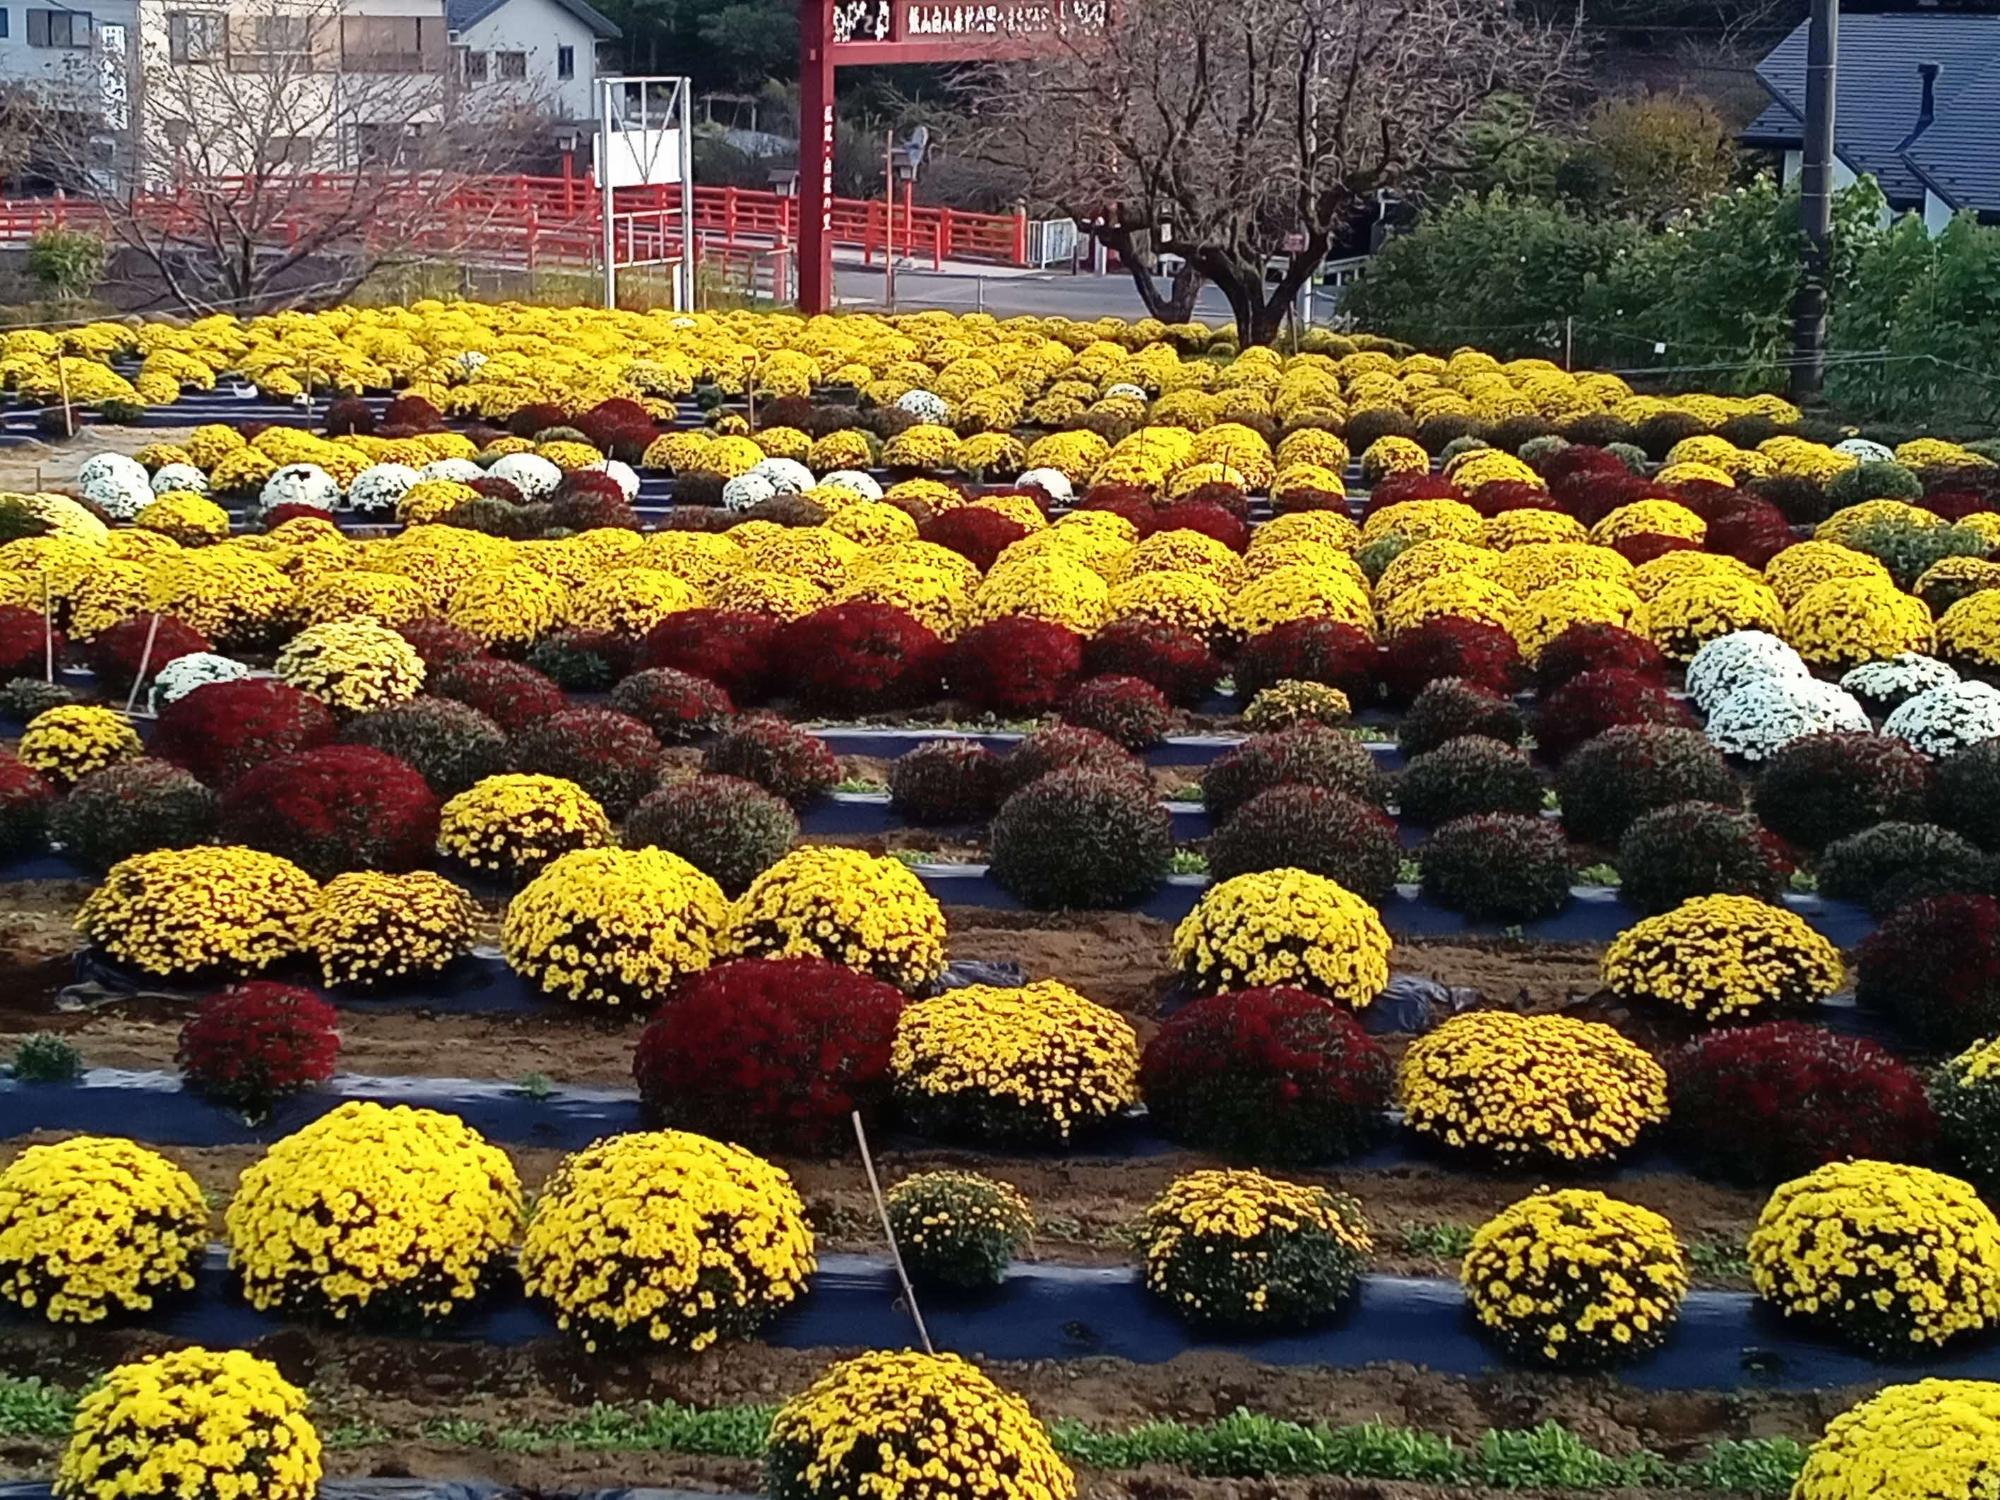 赤白黄色のざる菊が並べて植えられている様子